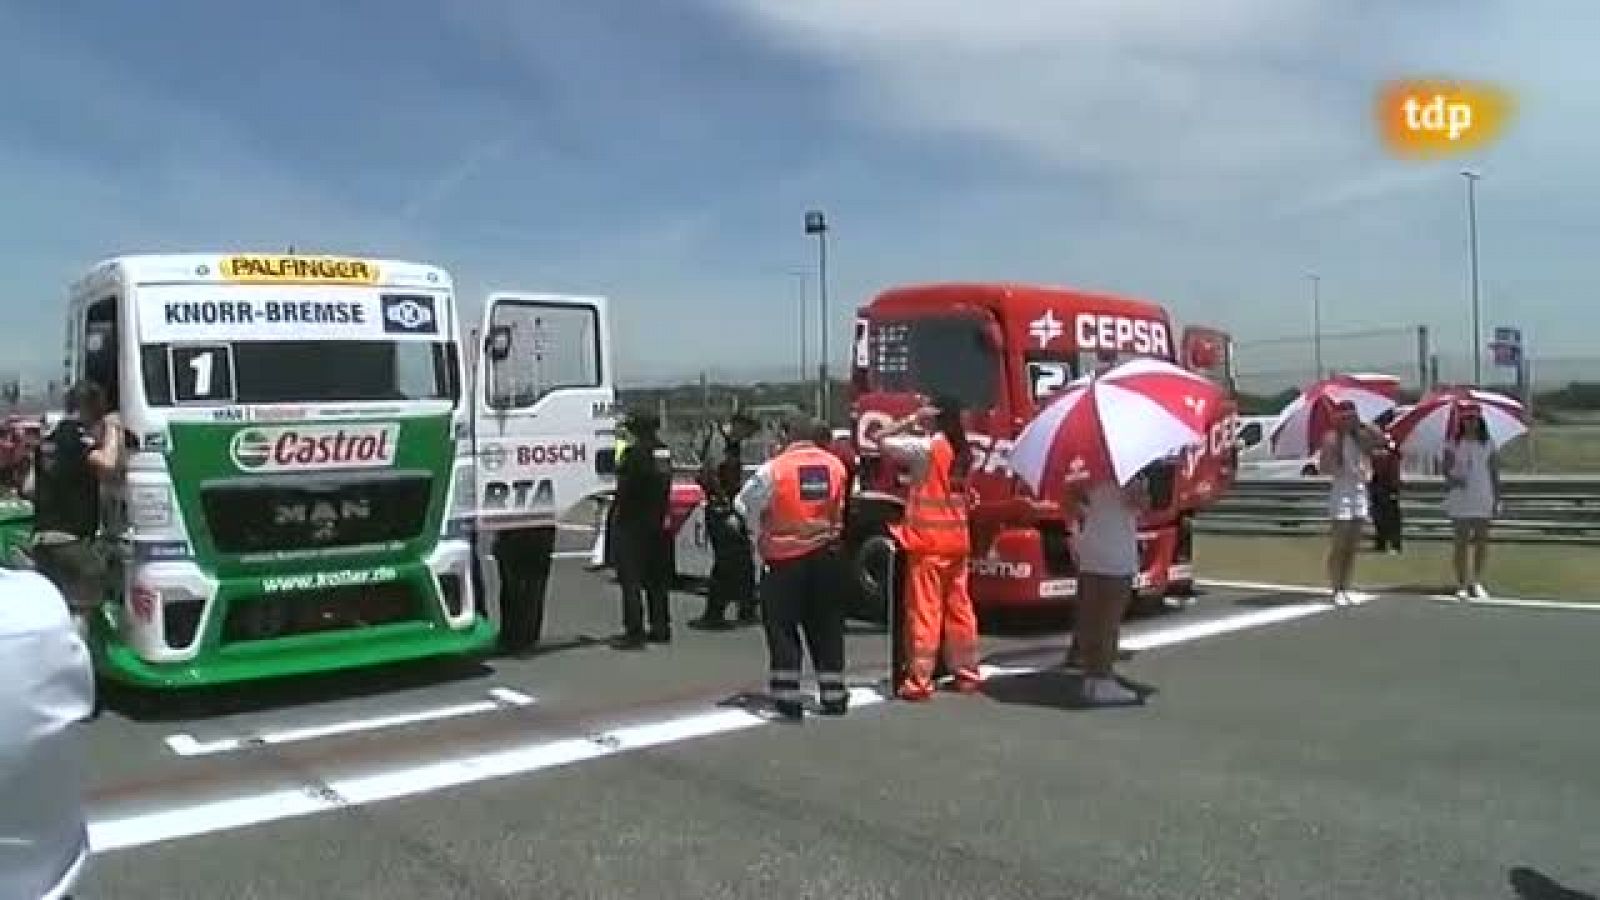 Carreras de camiones - Campeonato de Europa "GP Camión de las naciones"